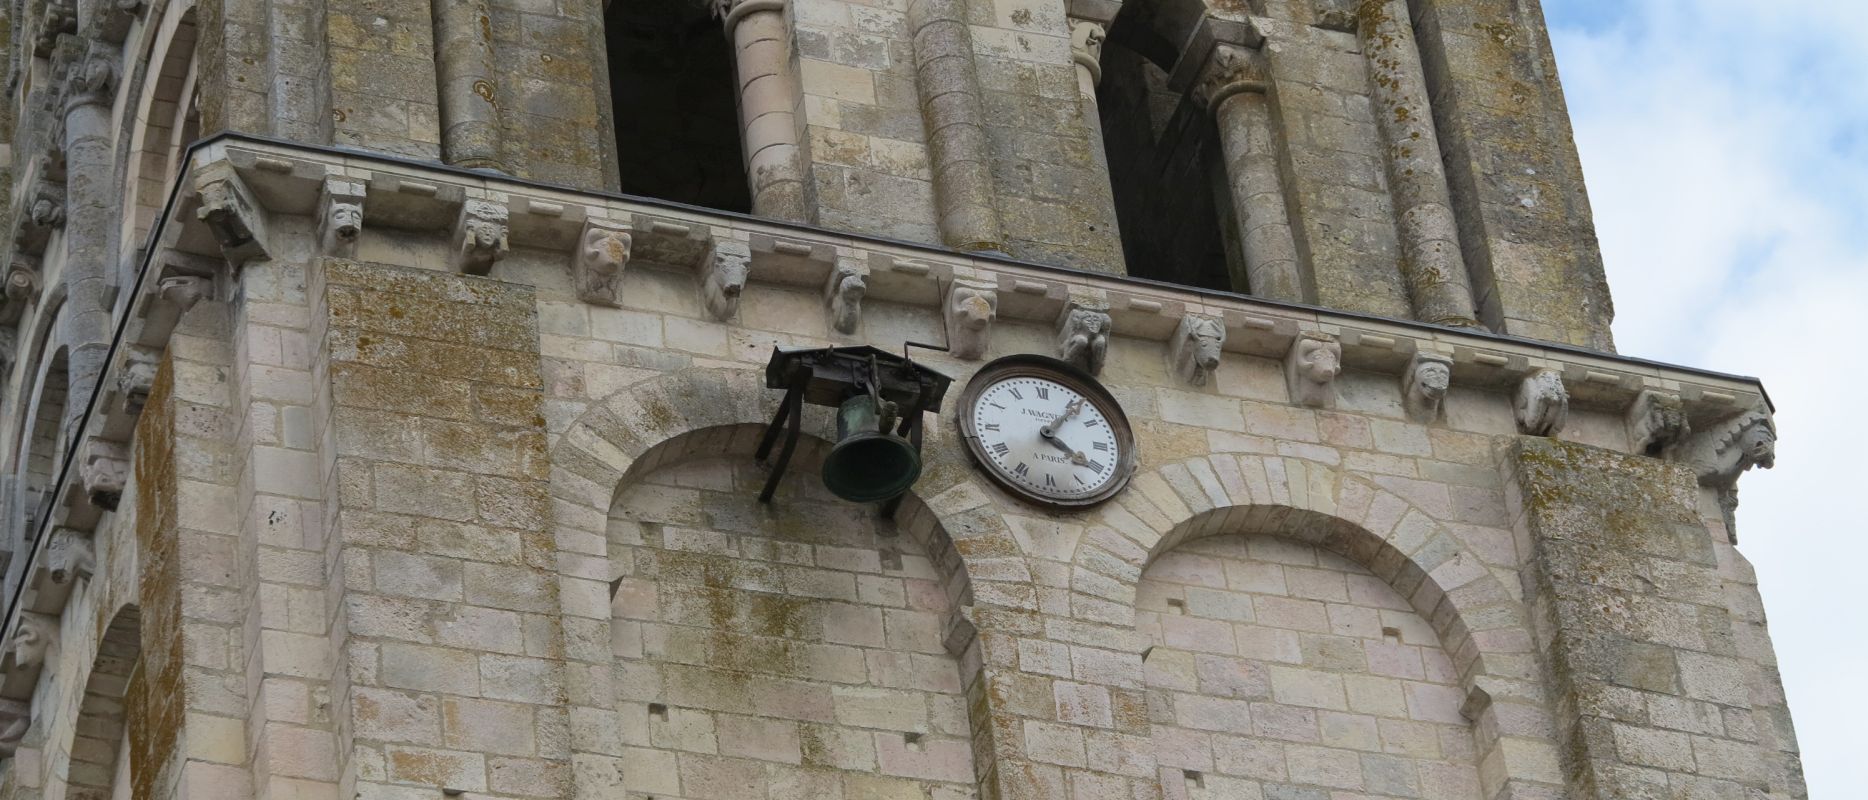 Élévation ouest, clocher, corniche à modillons, cloche et horloge.